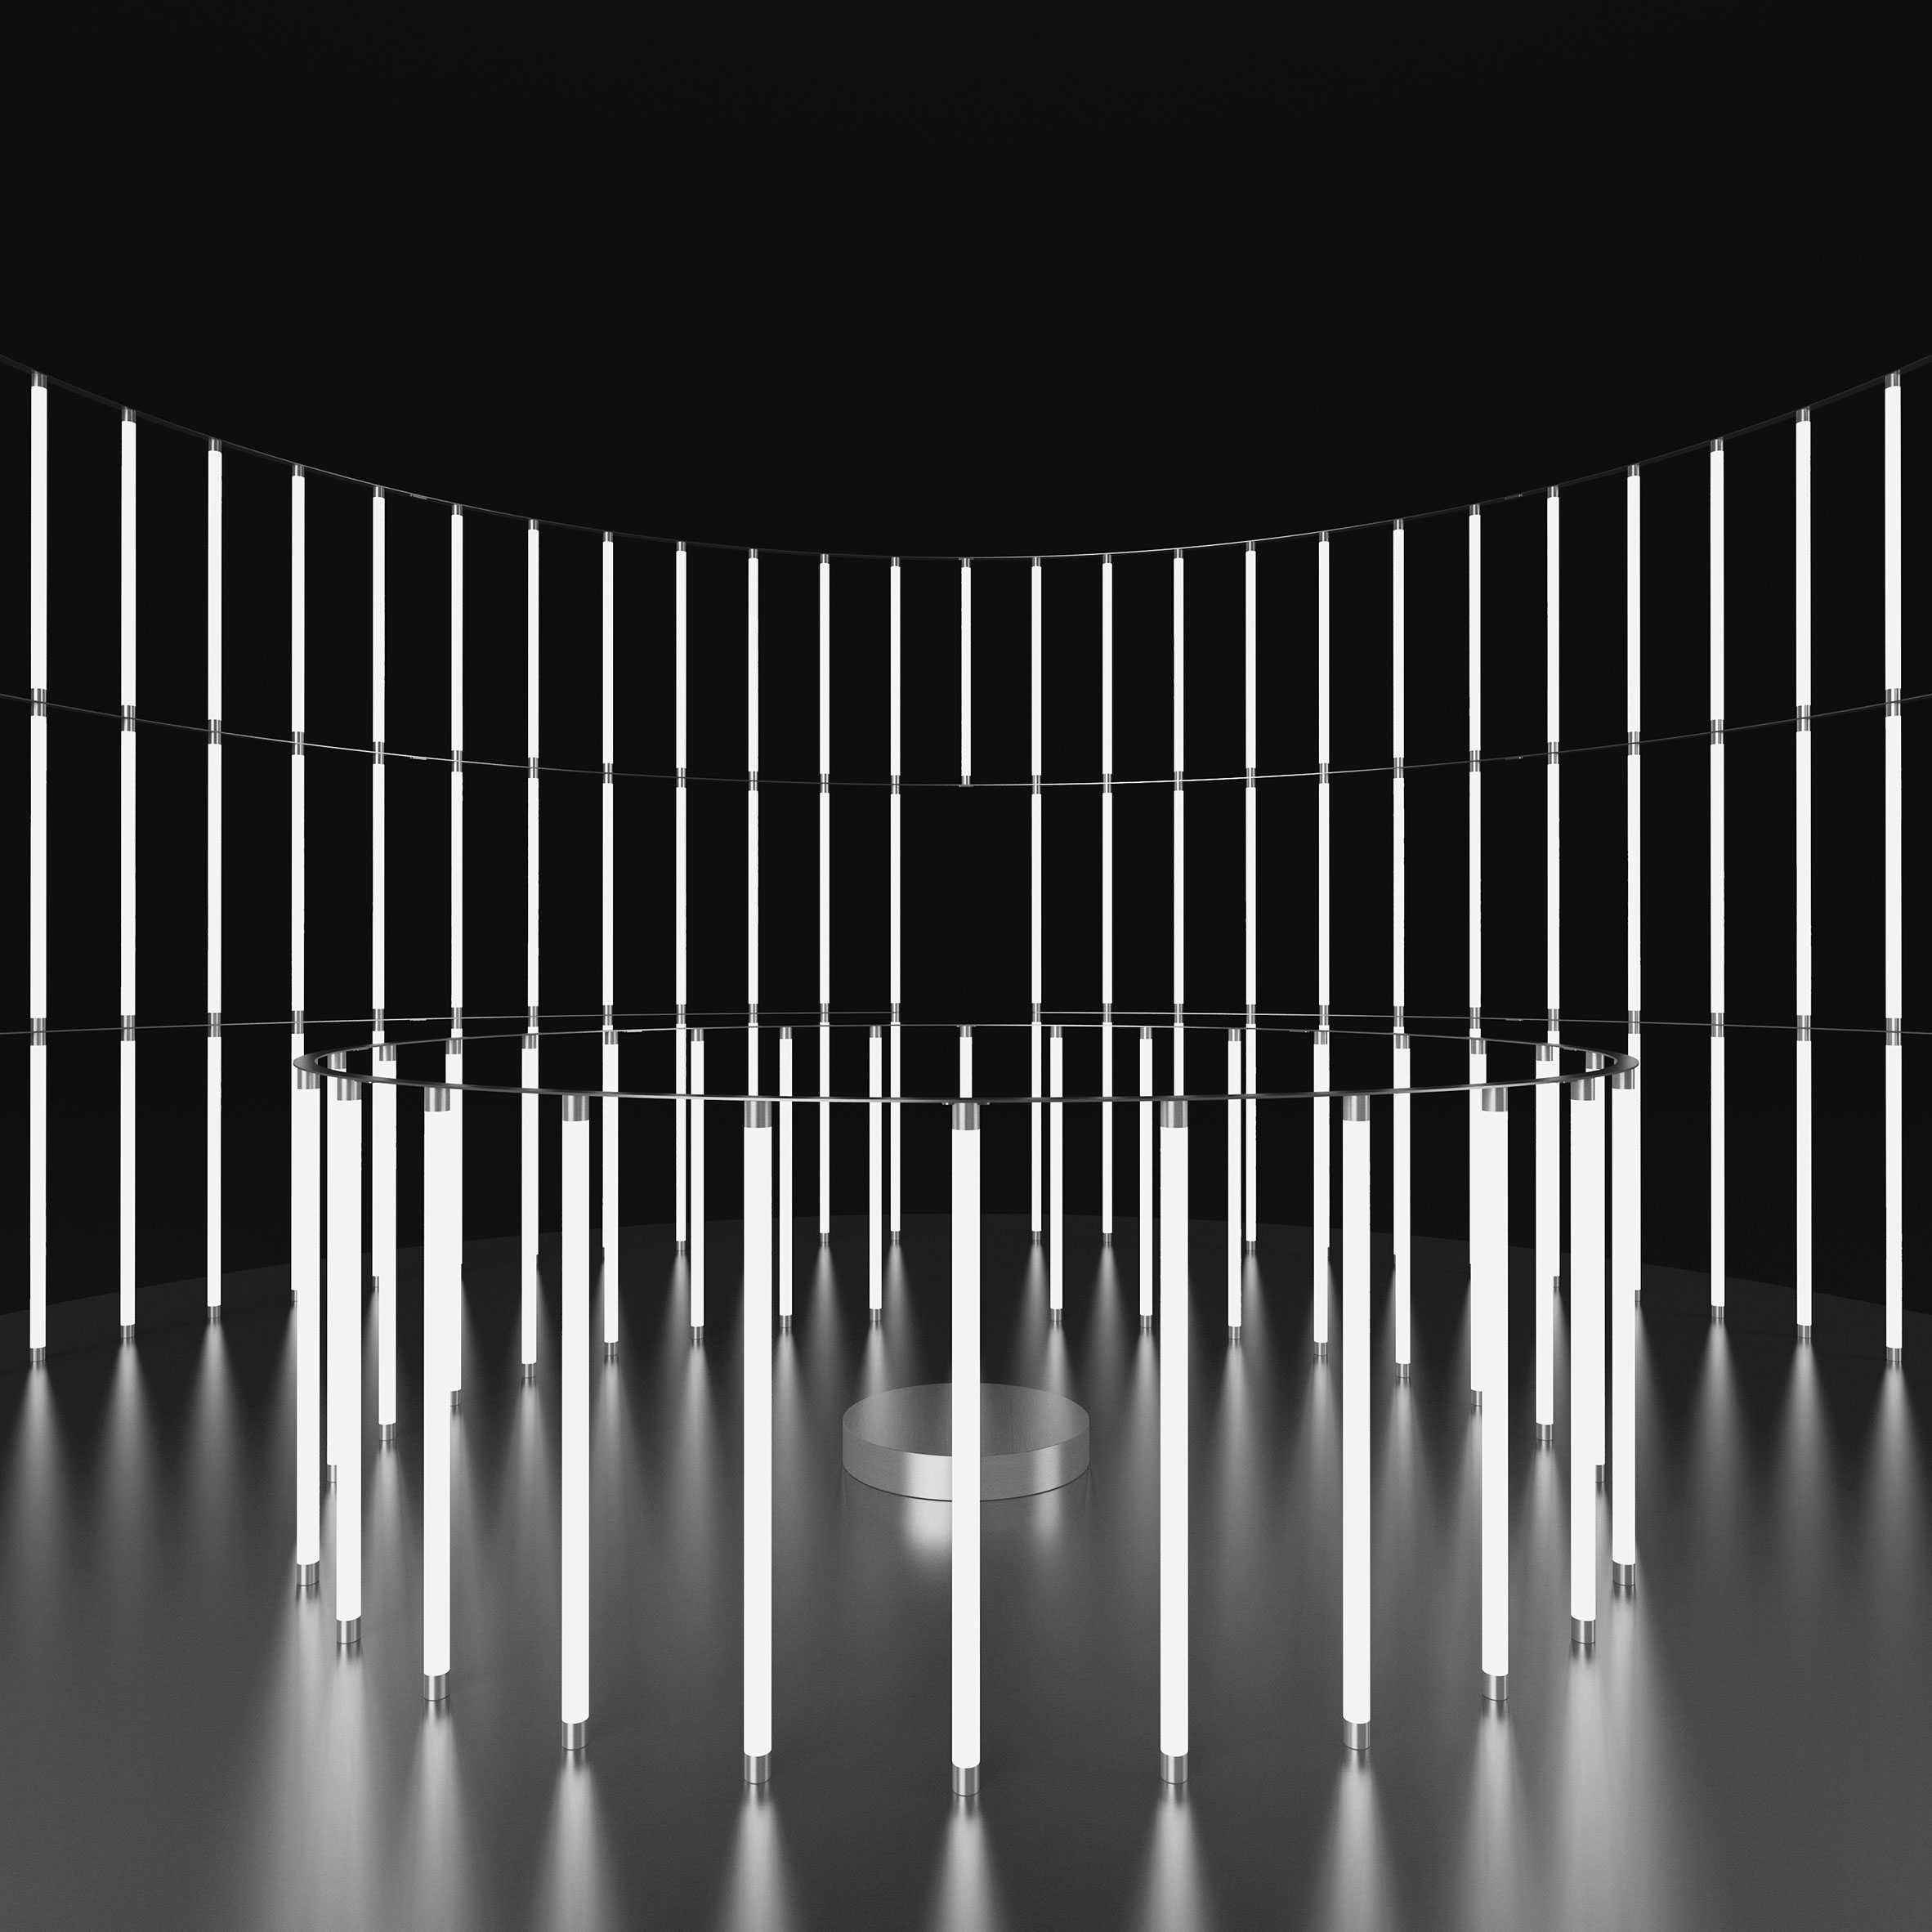 Colosseum installation by Mario Tsai at Design Shanghai